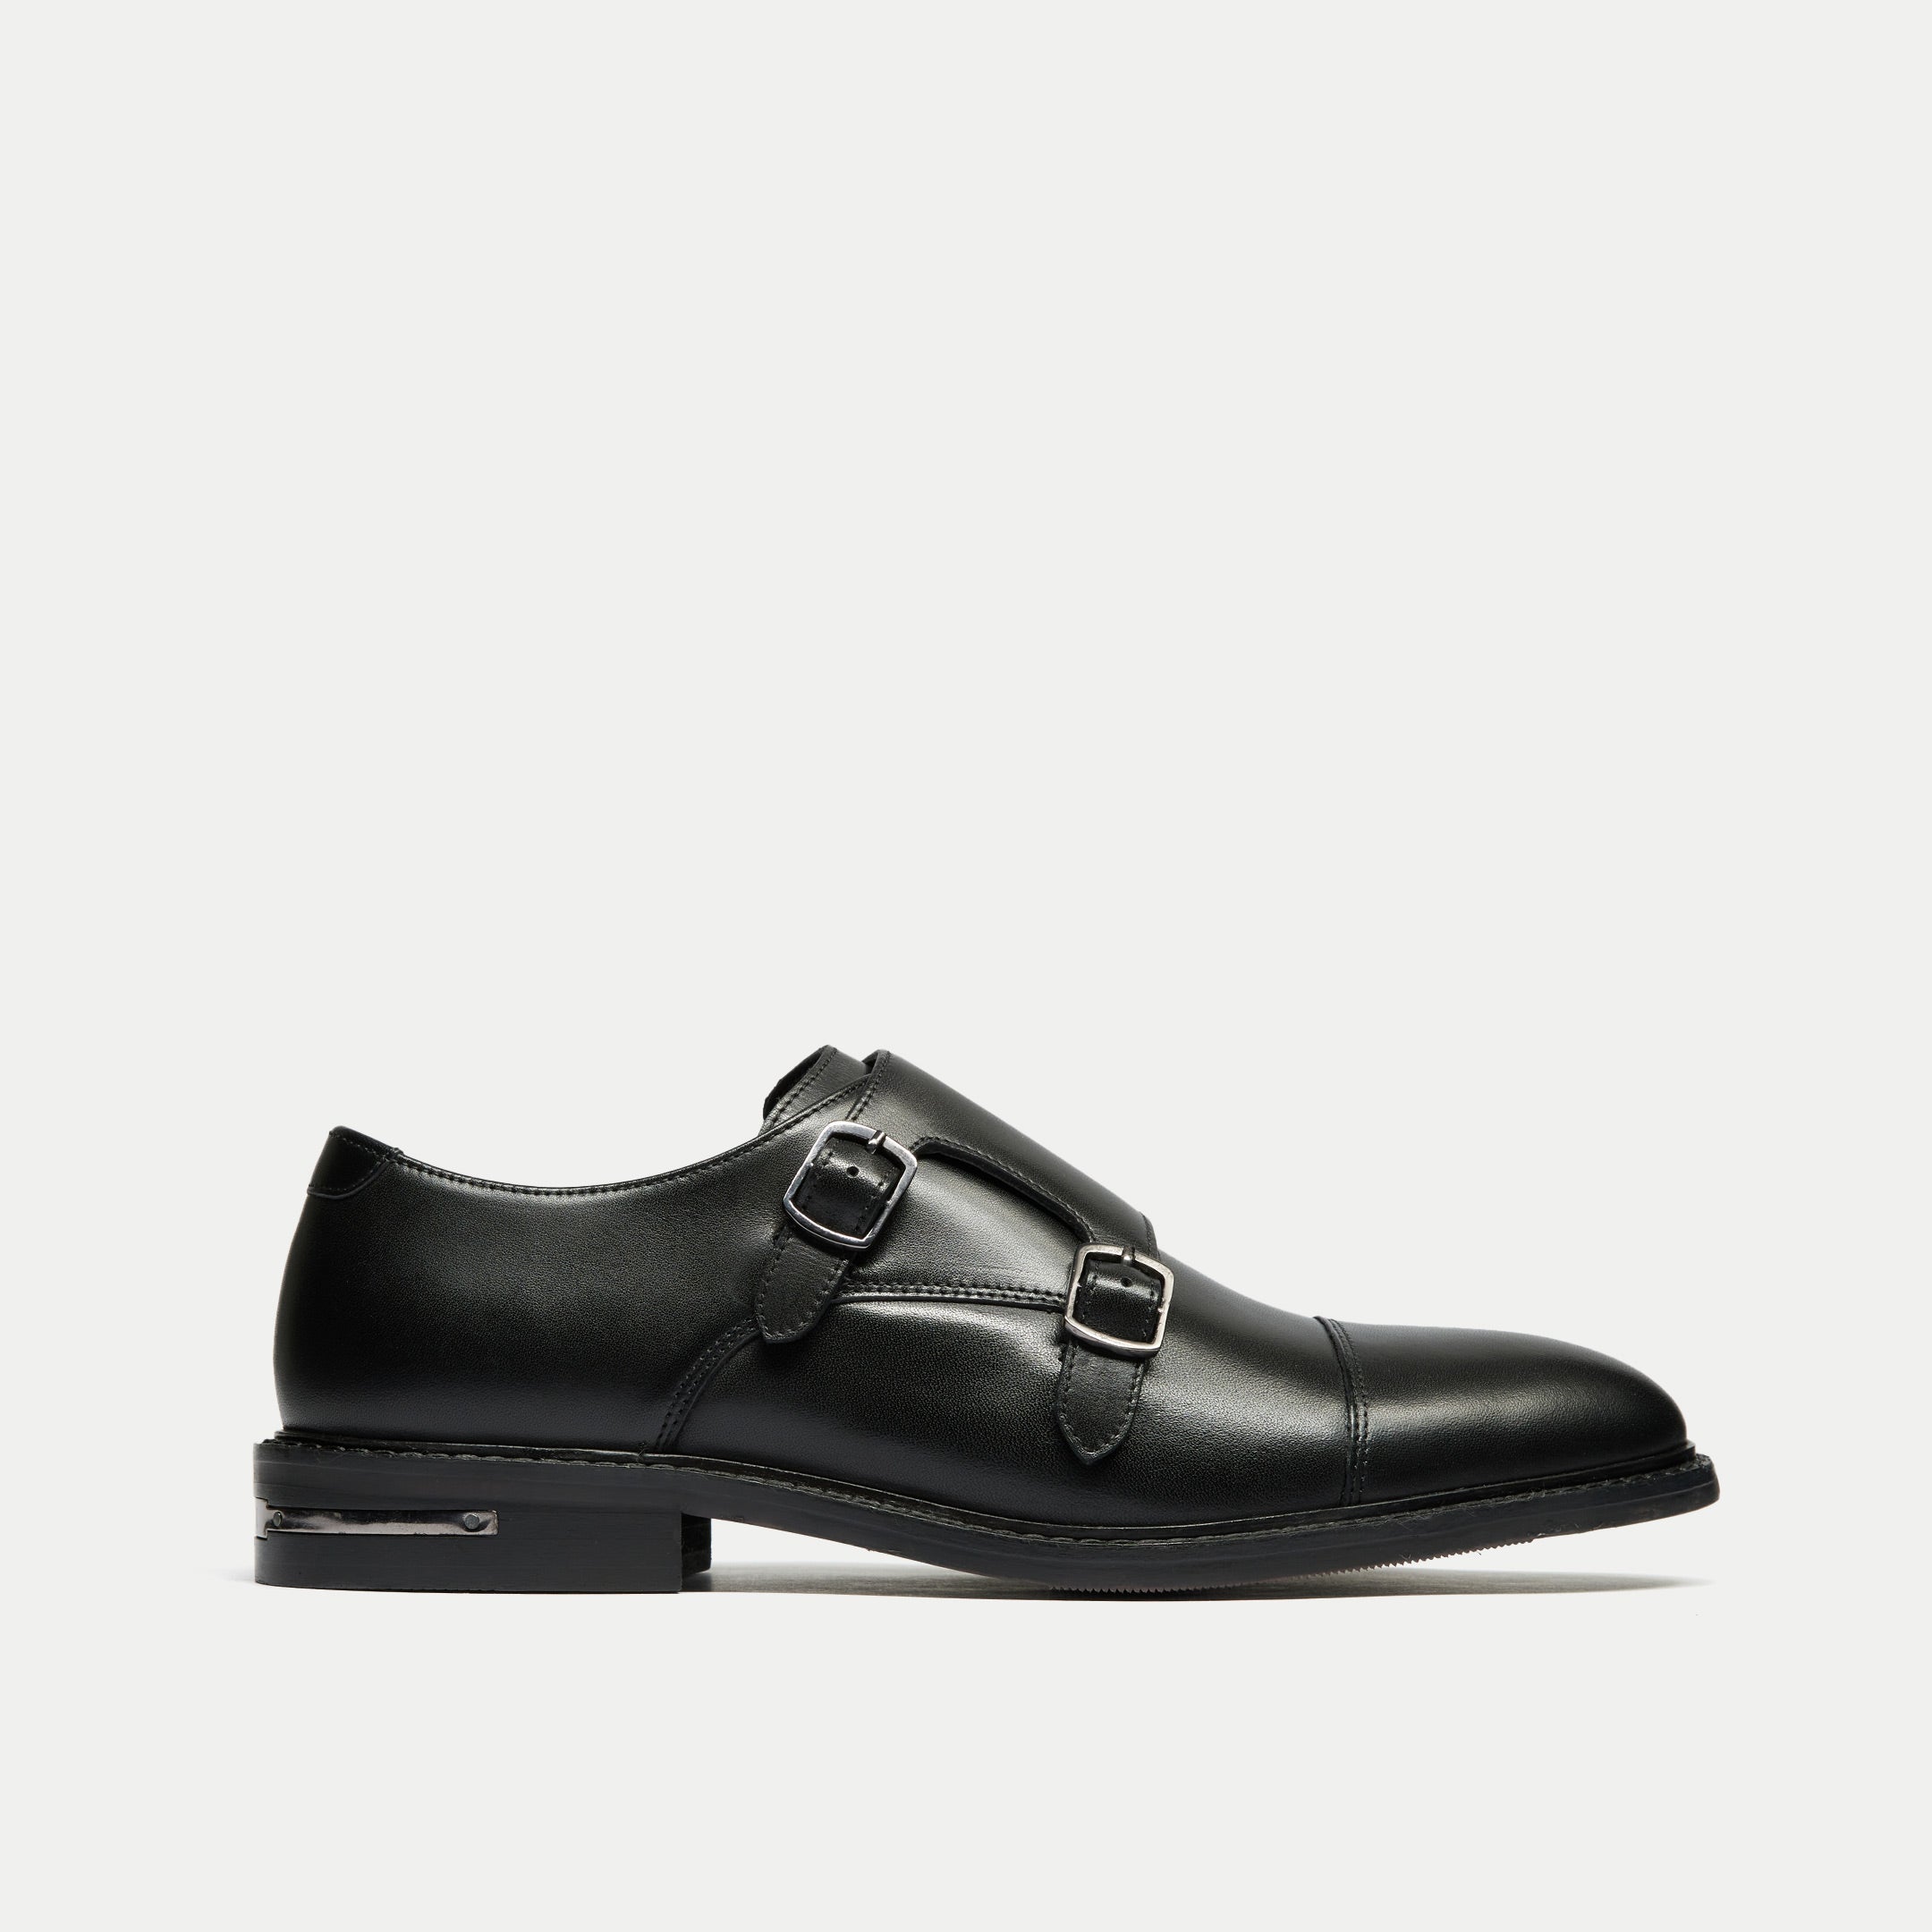 Walk London Mens Oliver Monk Strap Shoe in Black Leather